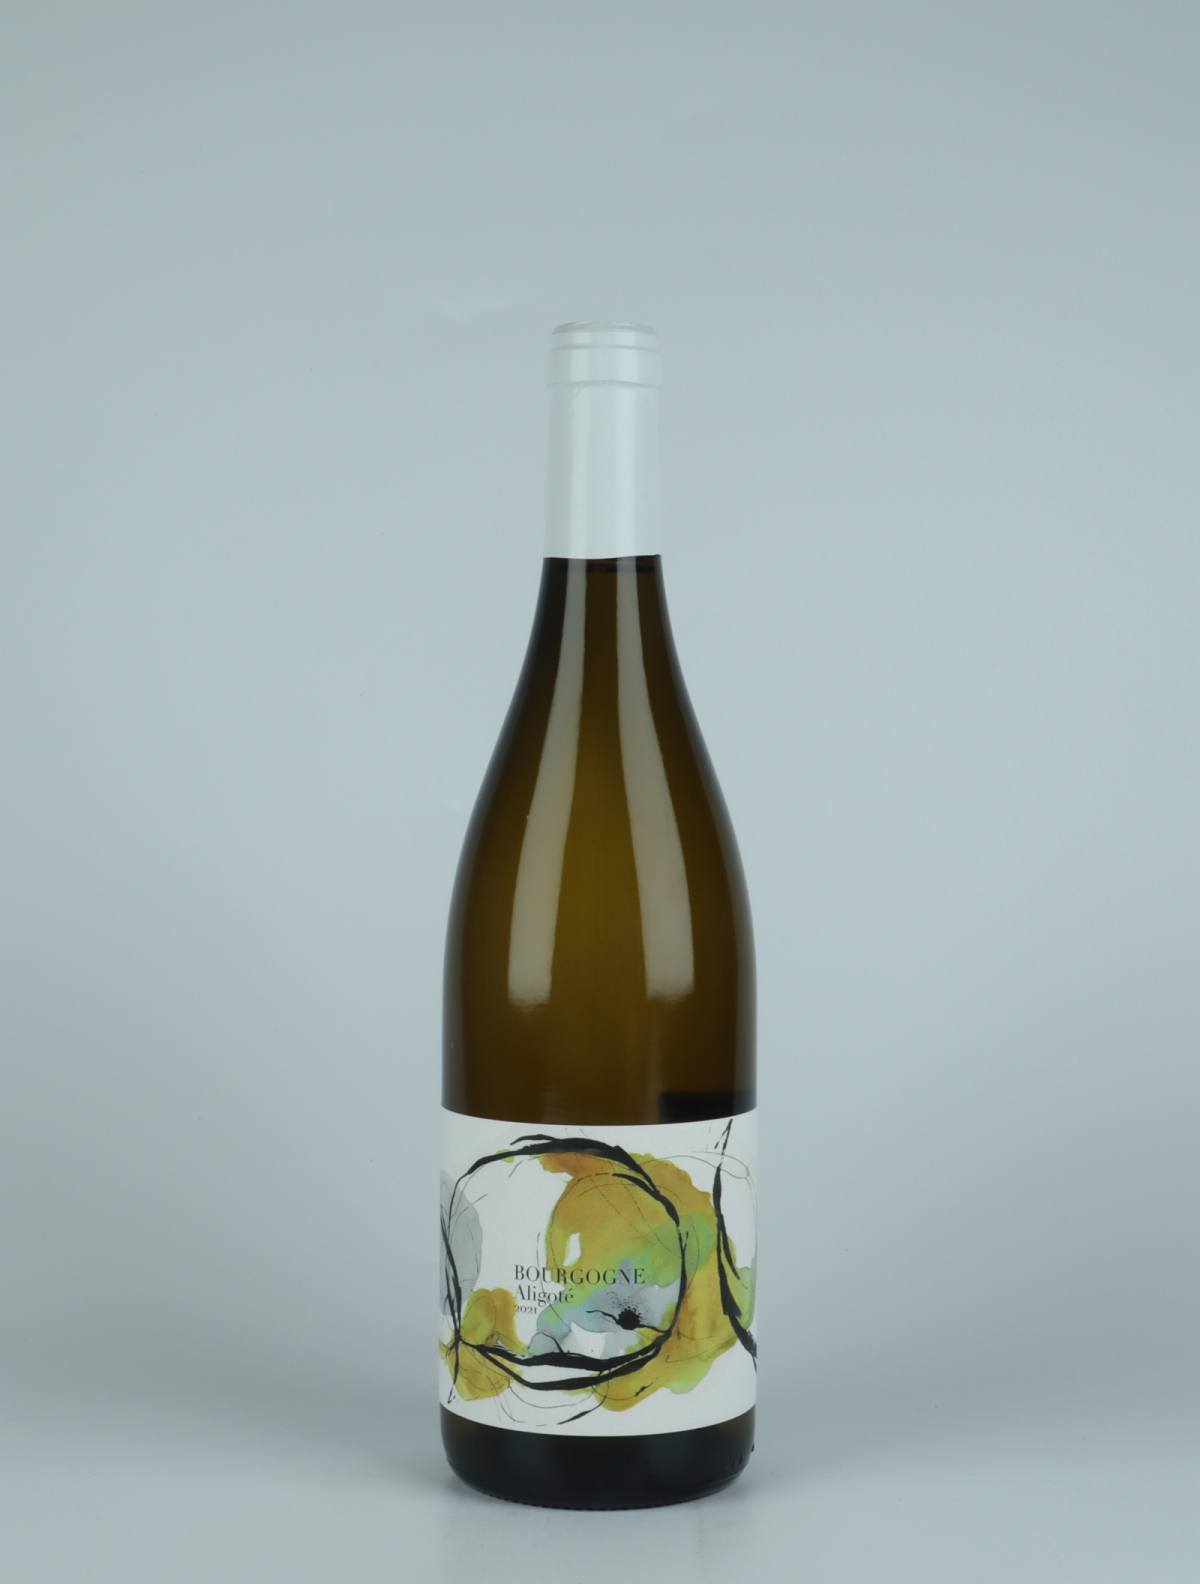 A bottle 2021 Bourgogne Aligoté White wine from Domaine Didon, Burgundy in France